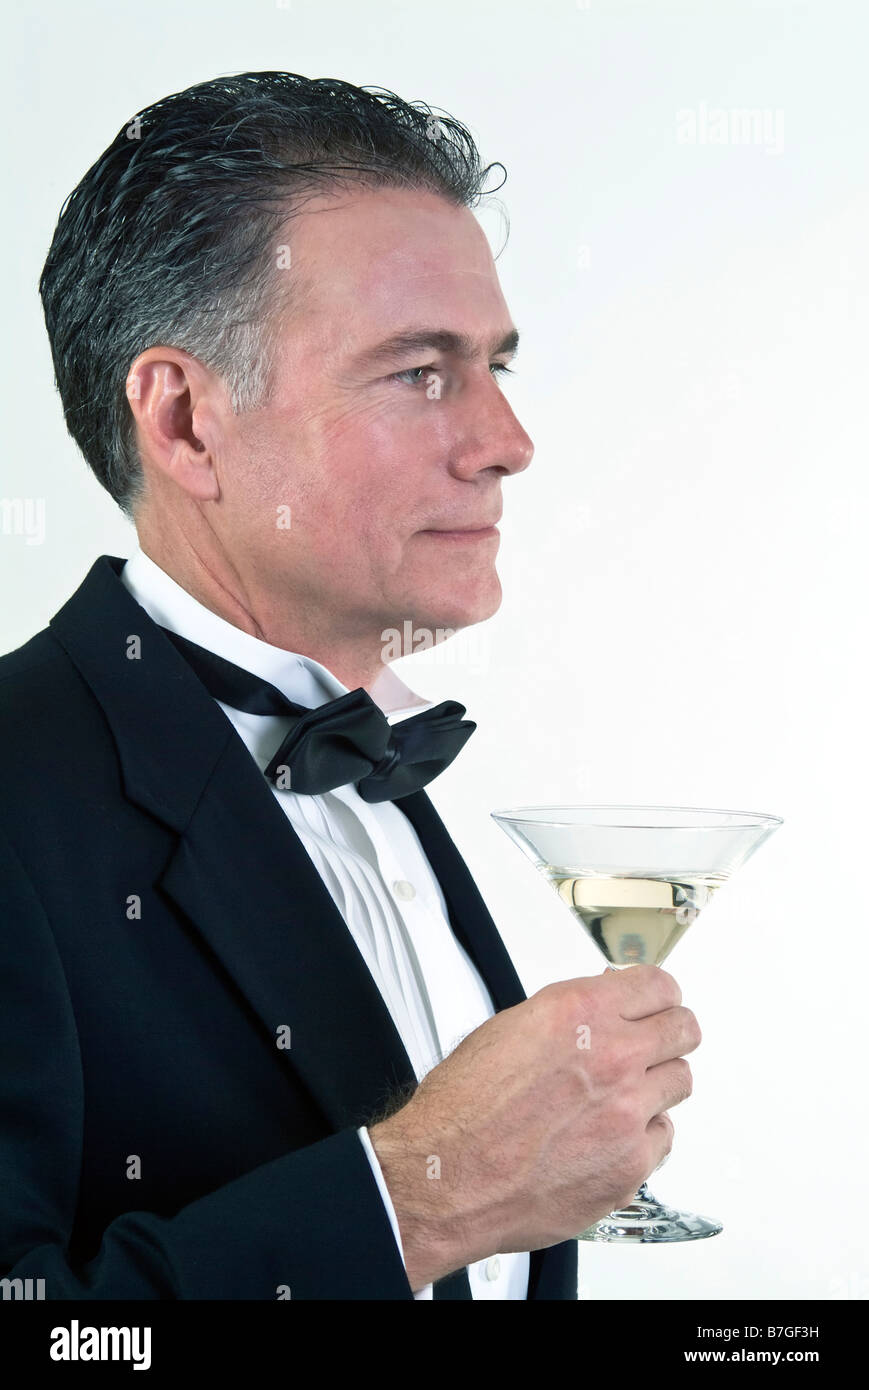 Ein Mann in formelle Kleidung und einen Martini Glas in seiner Hand Blick aus in die Ferne genommen auf weißem Hintergrund Stockfoto